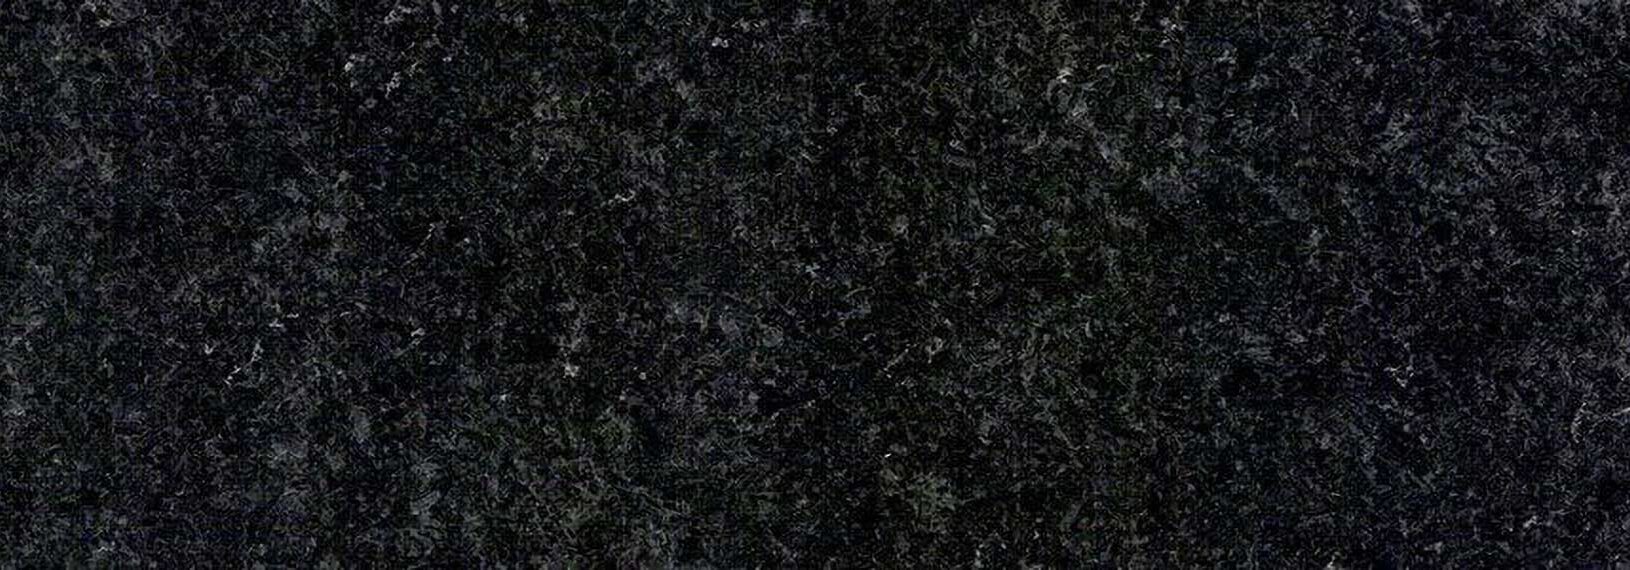 iransangara black granite stone